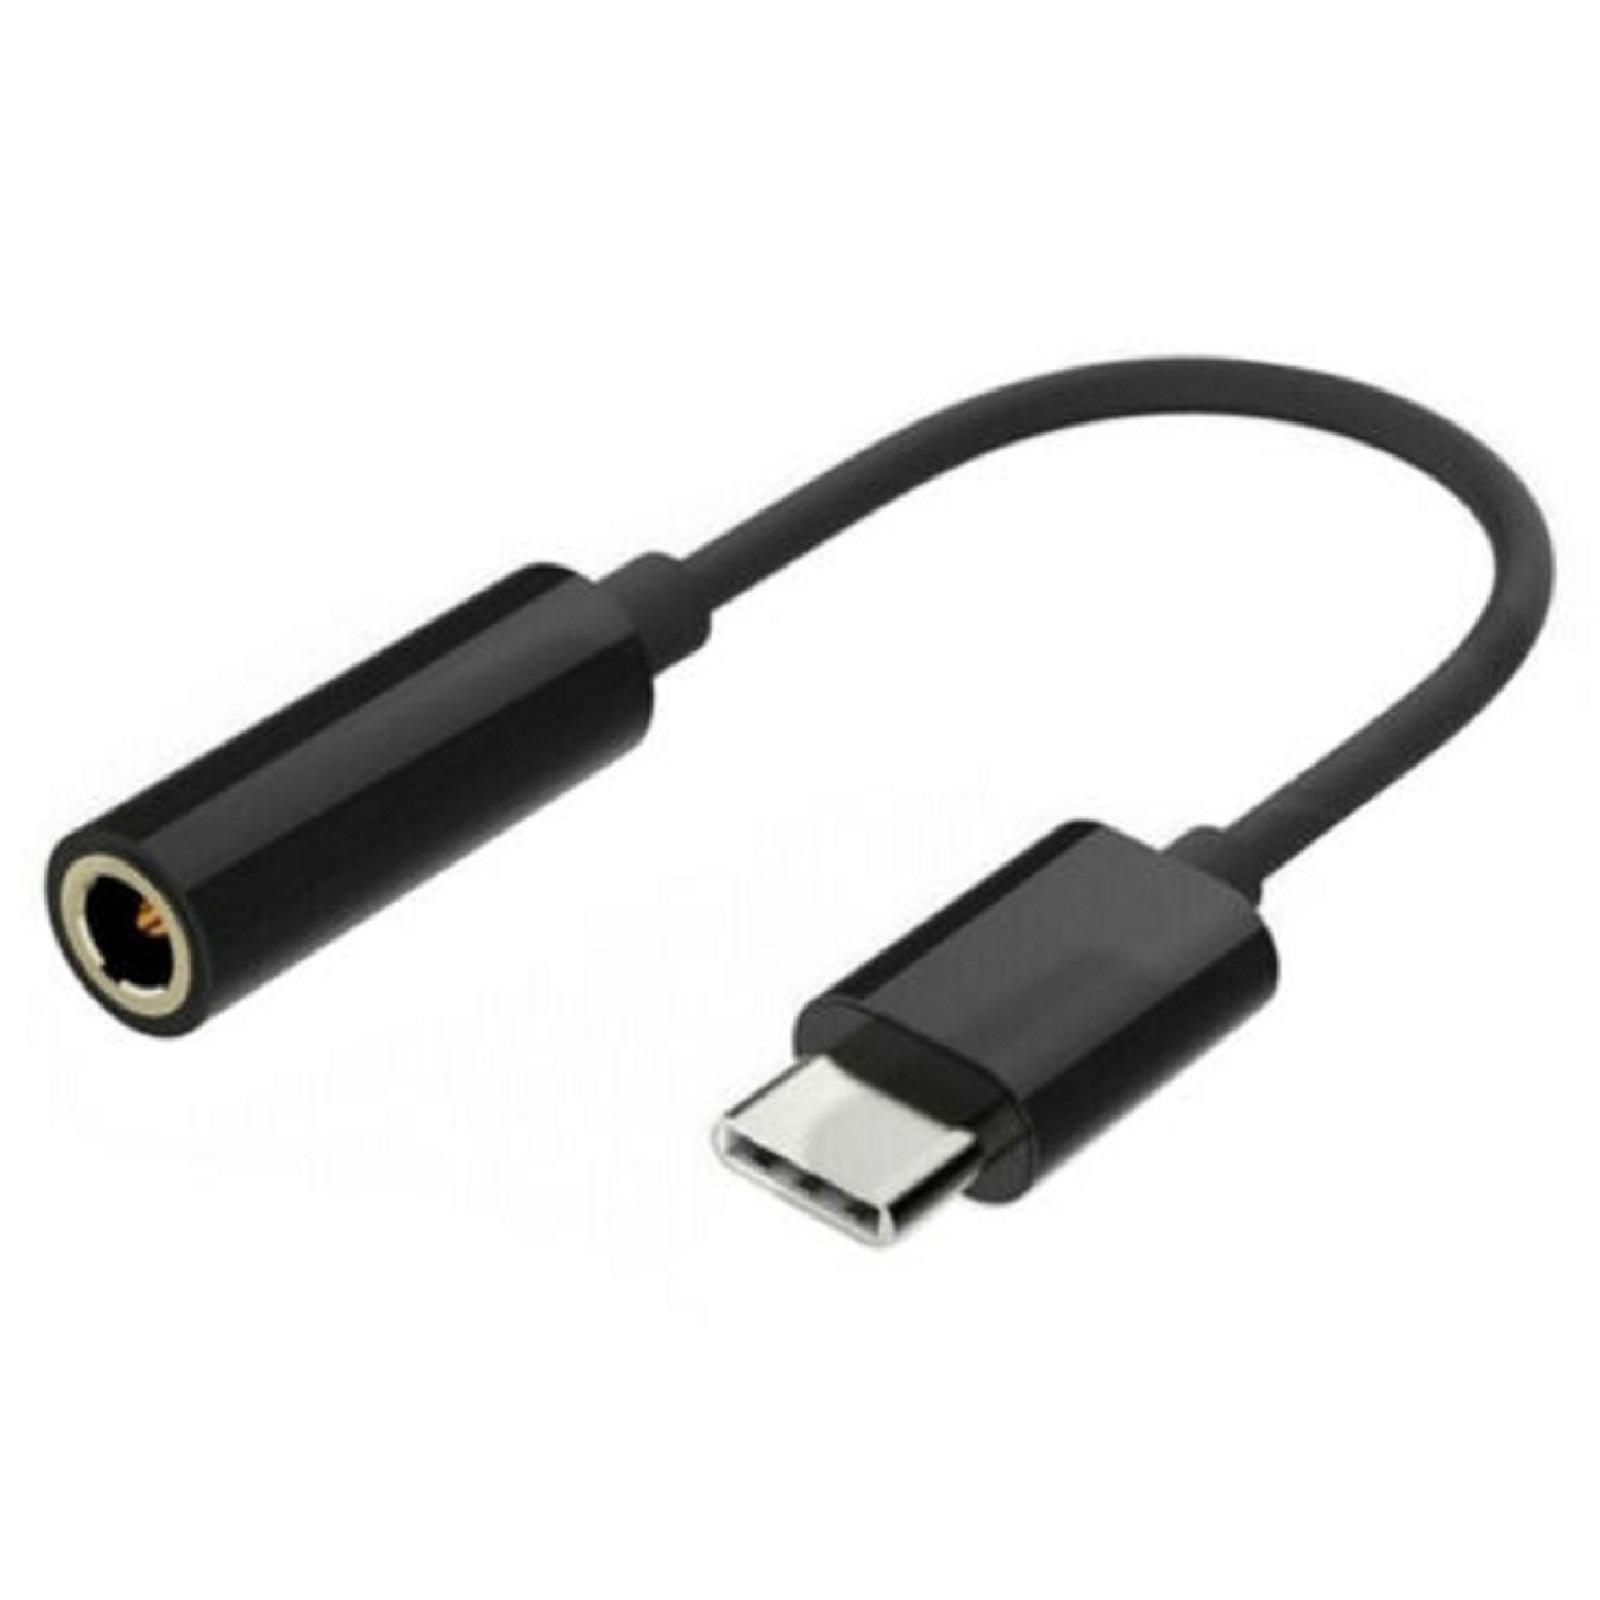 Cable Adaptador Conversor USB Tipo C Macho a Jack 3.5 Hembra Elige eBay